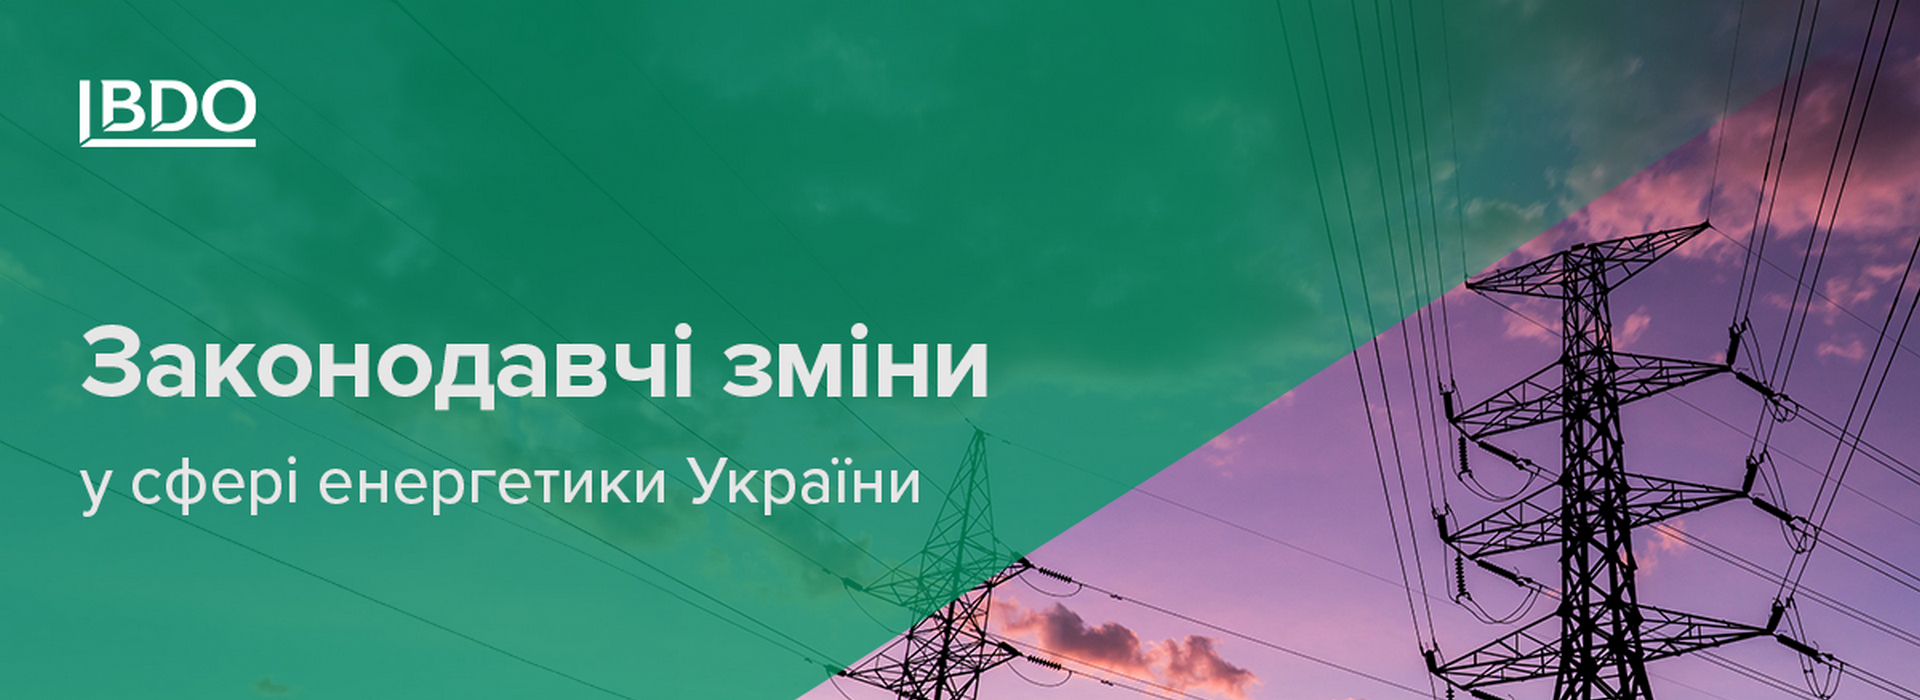 Законодавчі зміни у сфері енергетики України